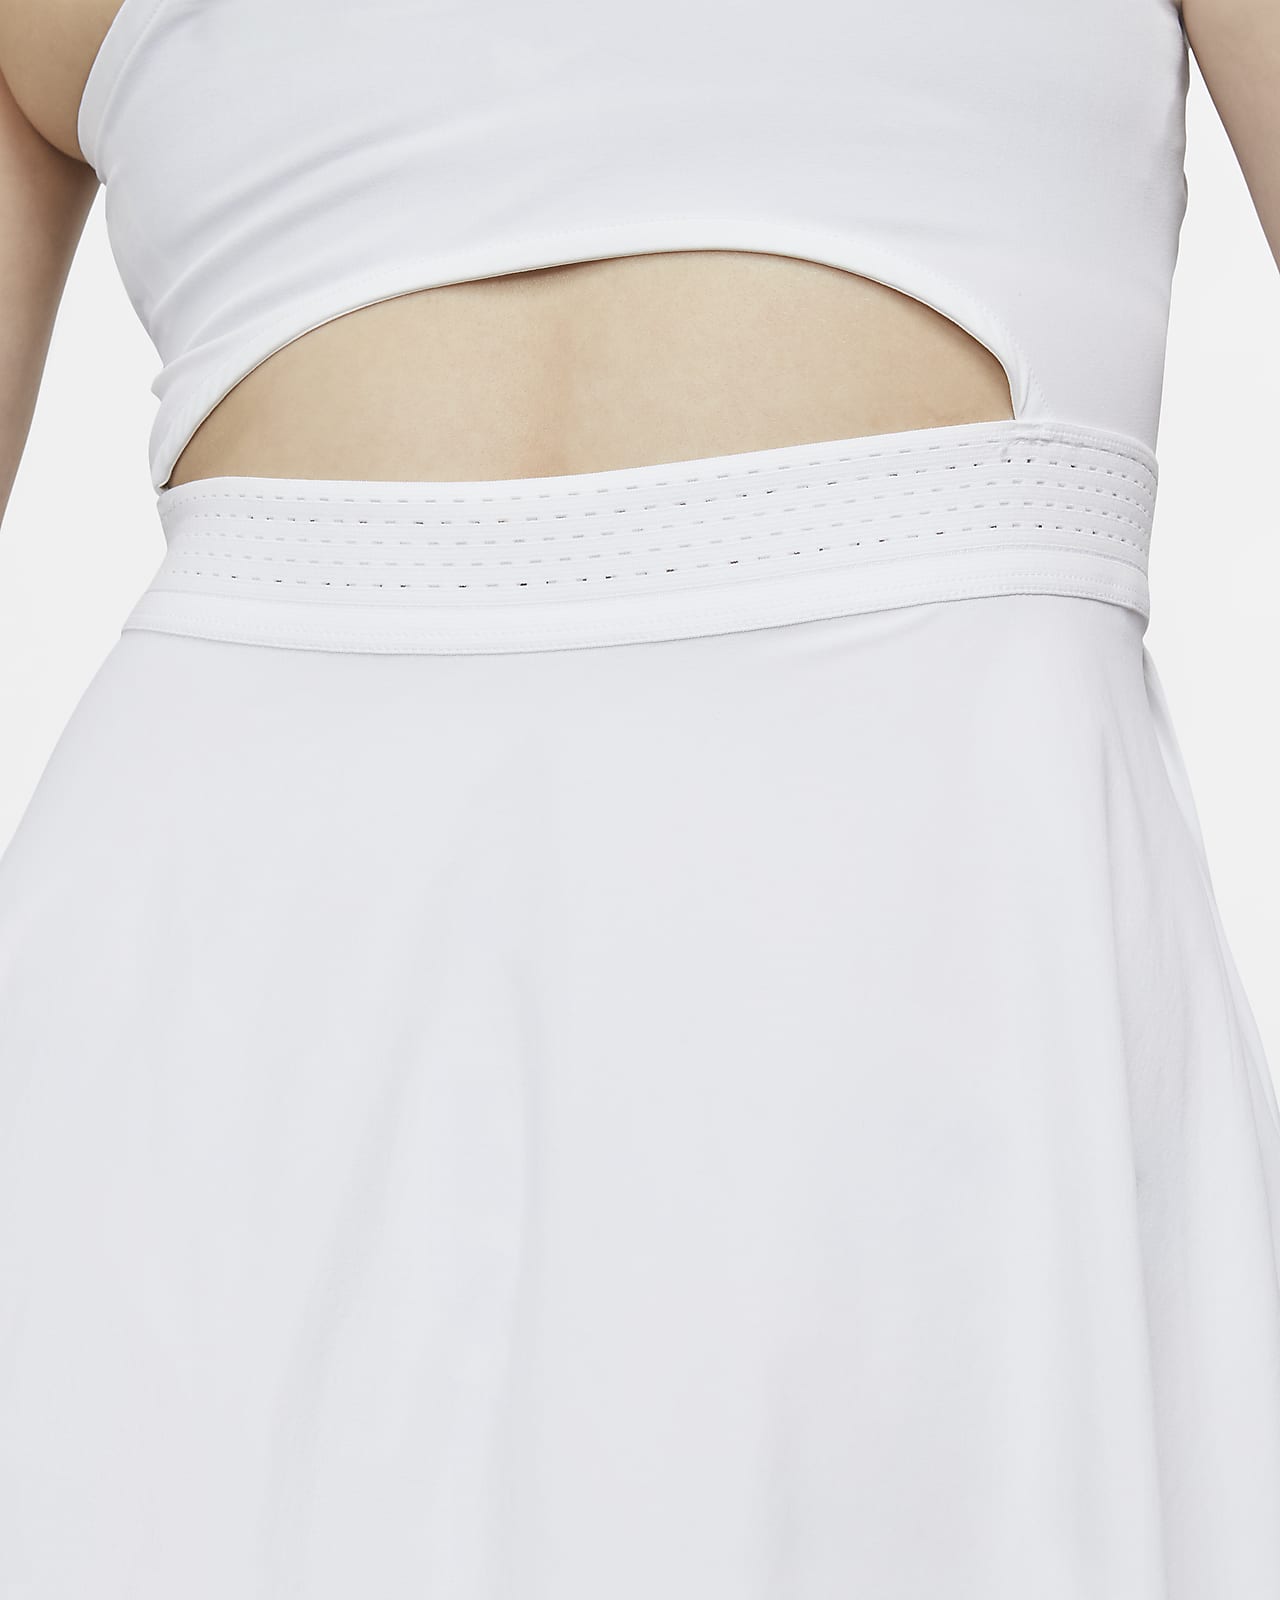 Nike Dri-FIT Get Fit Women's Tennis Pants - Black/White